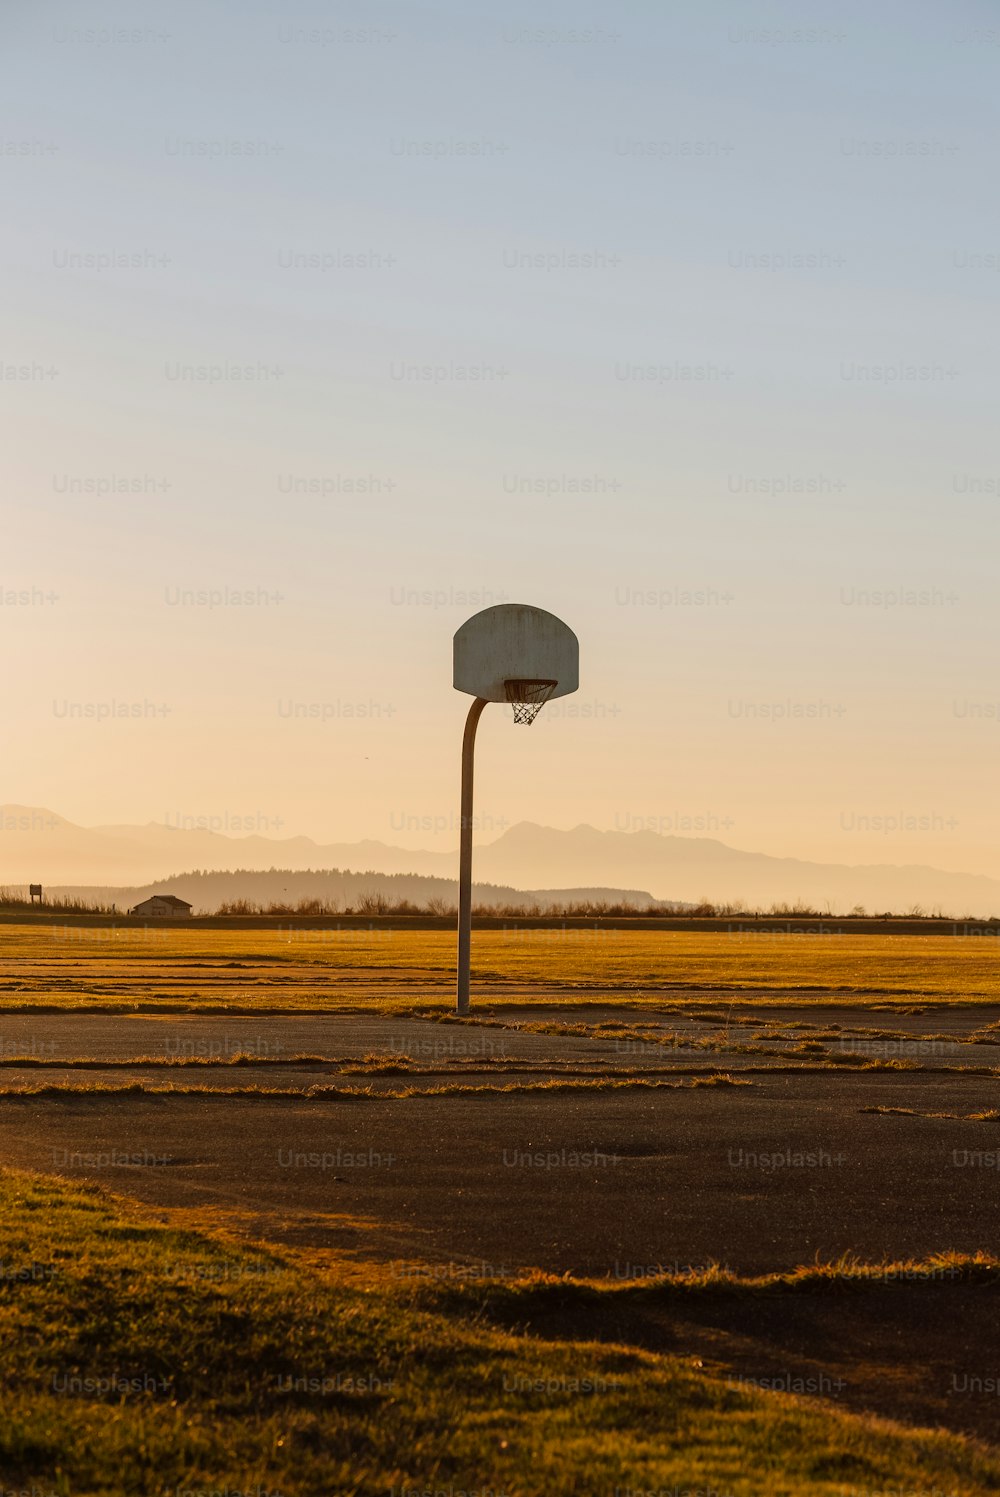 Un aro de baloncesto en medio de un campo